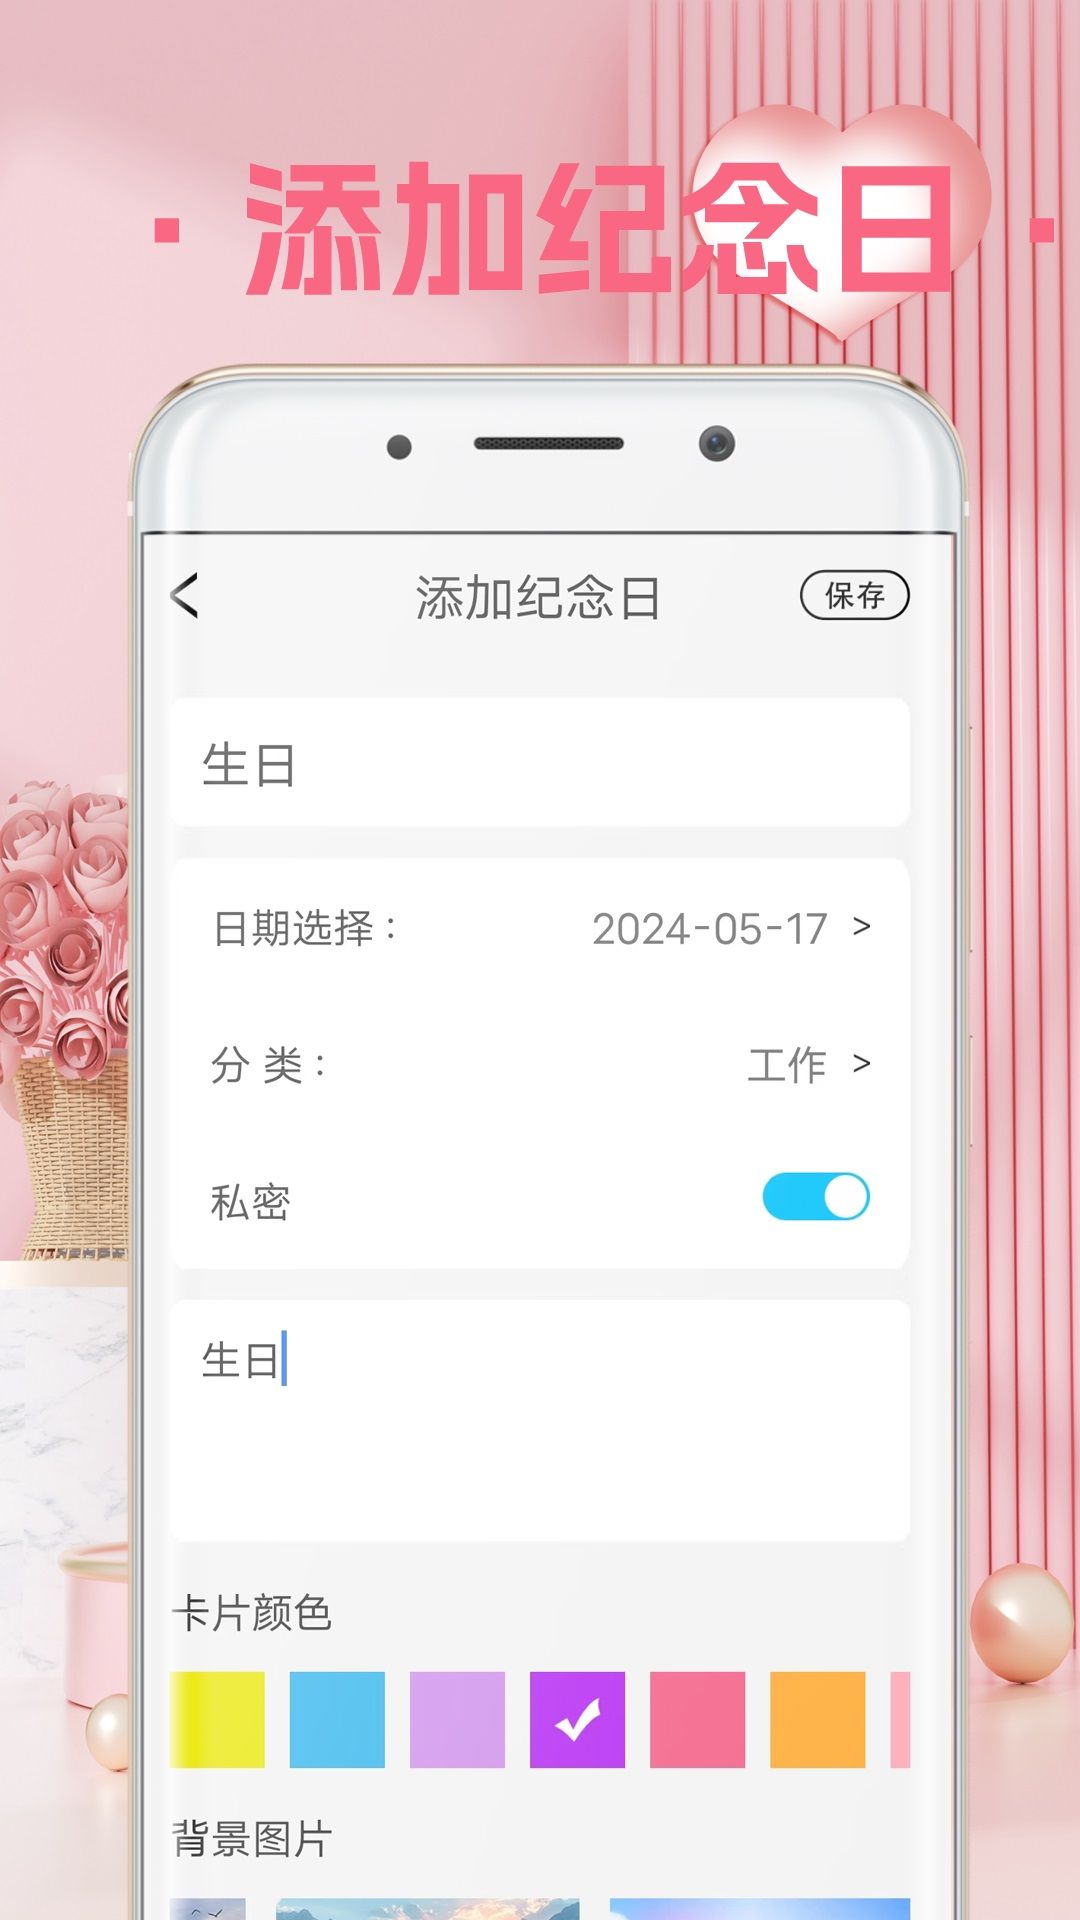 爱情心情备忘录安卓版app官方下载图片1